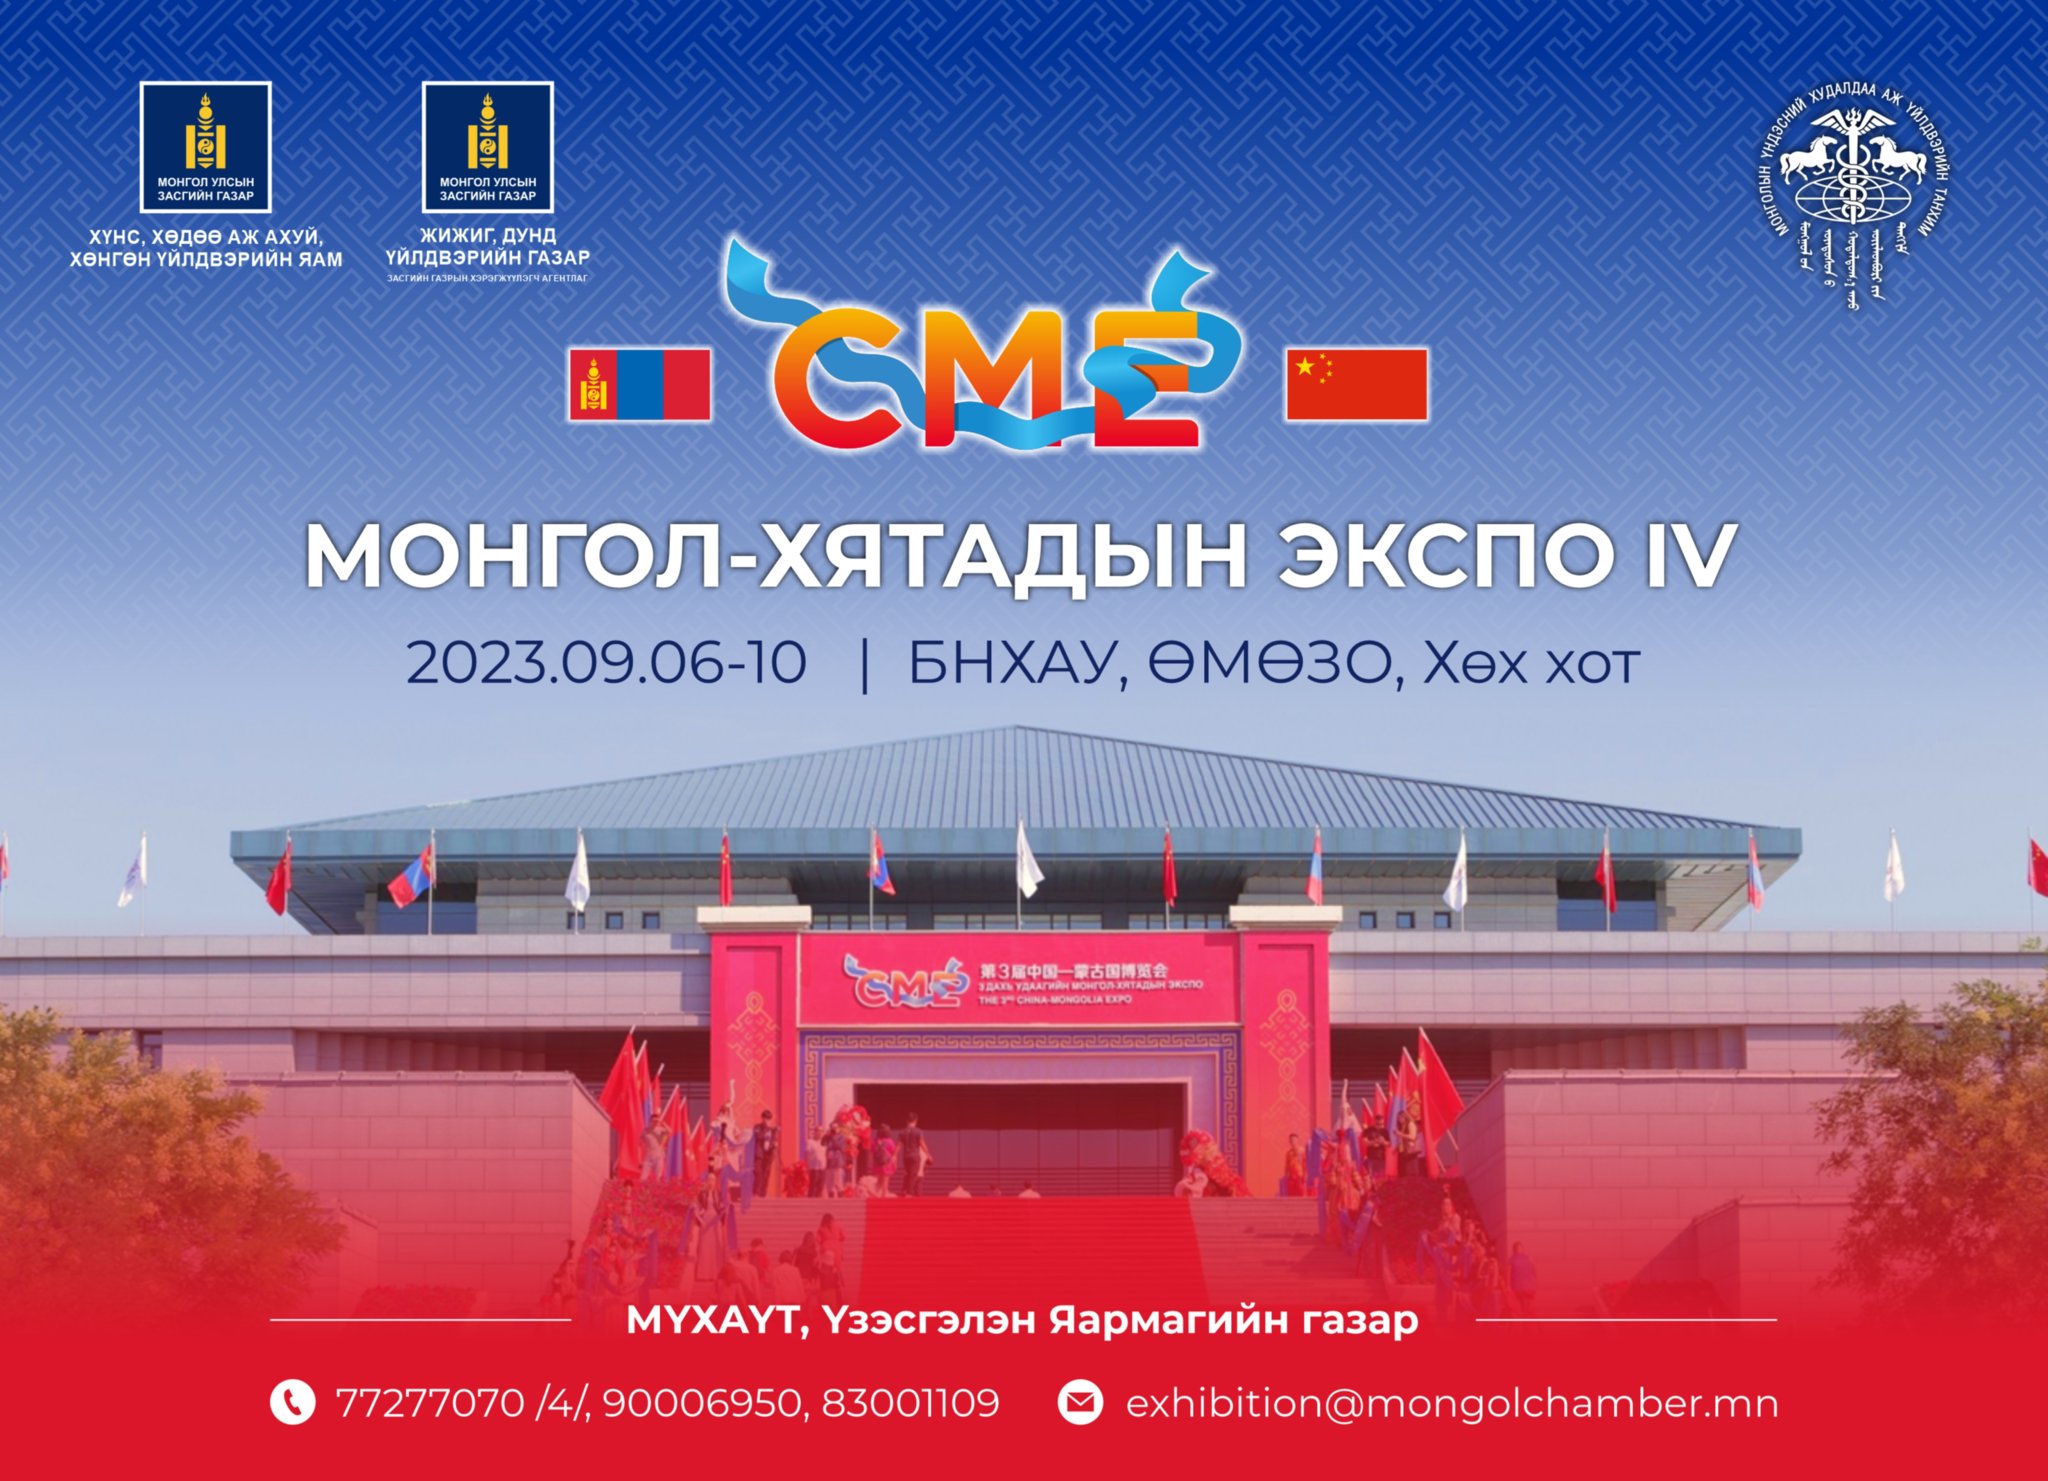 Хятад Монголын IV экспогийн онцлох үйл явдлууд